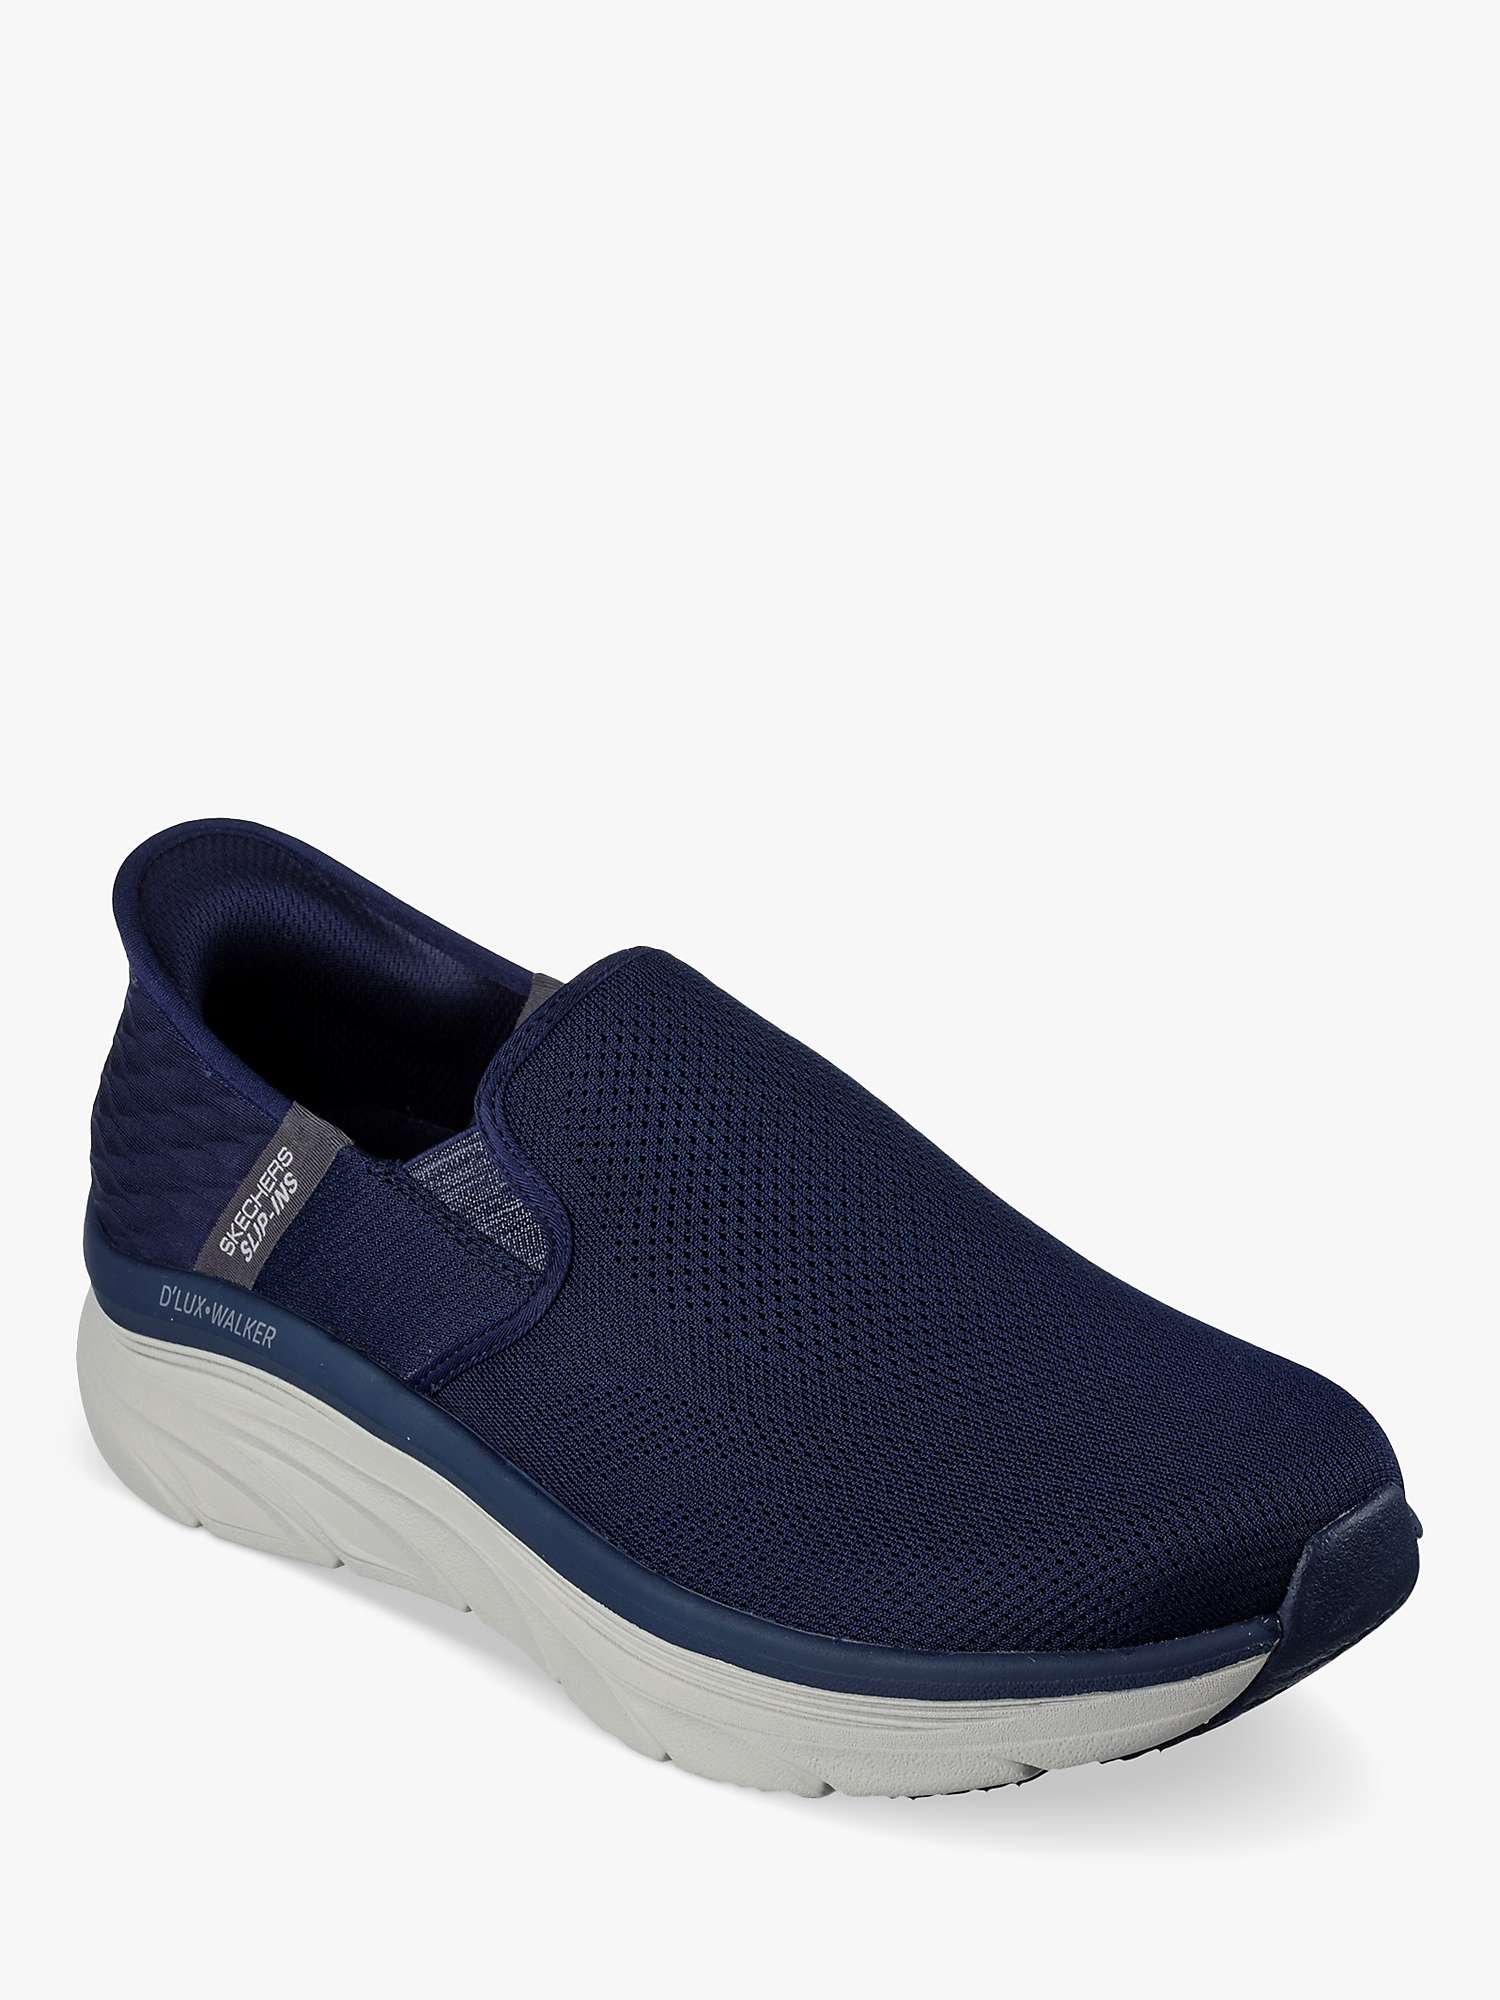 Buy Skechers D'Lux Walker Orford Slip-On Shoes Online at johnlewis.com